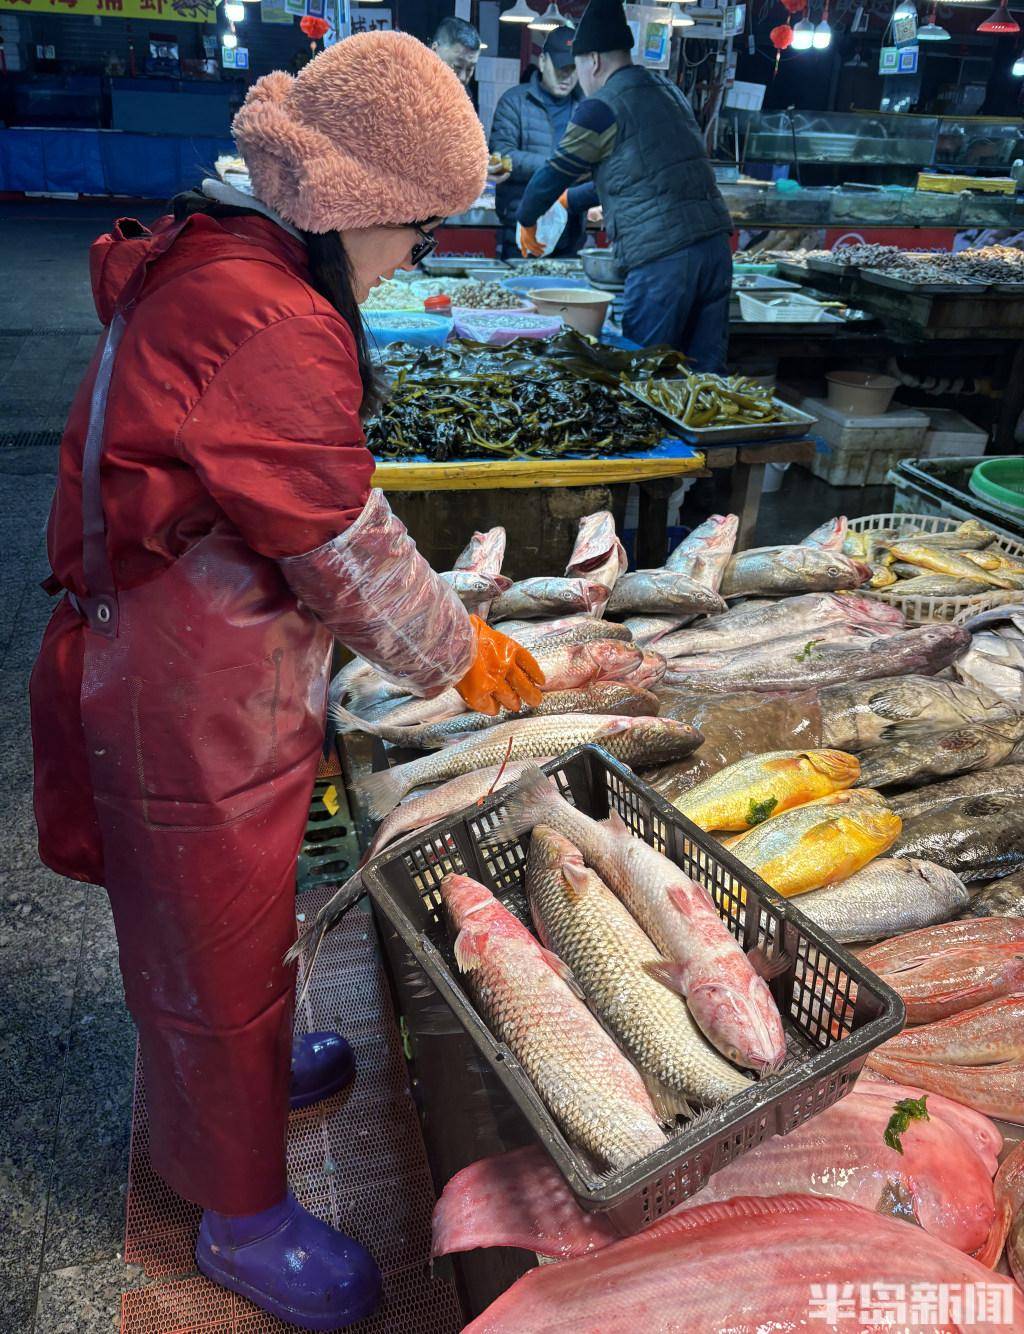 青岛市北区埠西市场里,这里的海鲜市场很热闹,商家在叫卖刚捕捞来的开